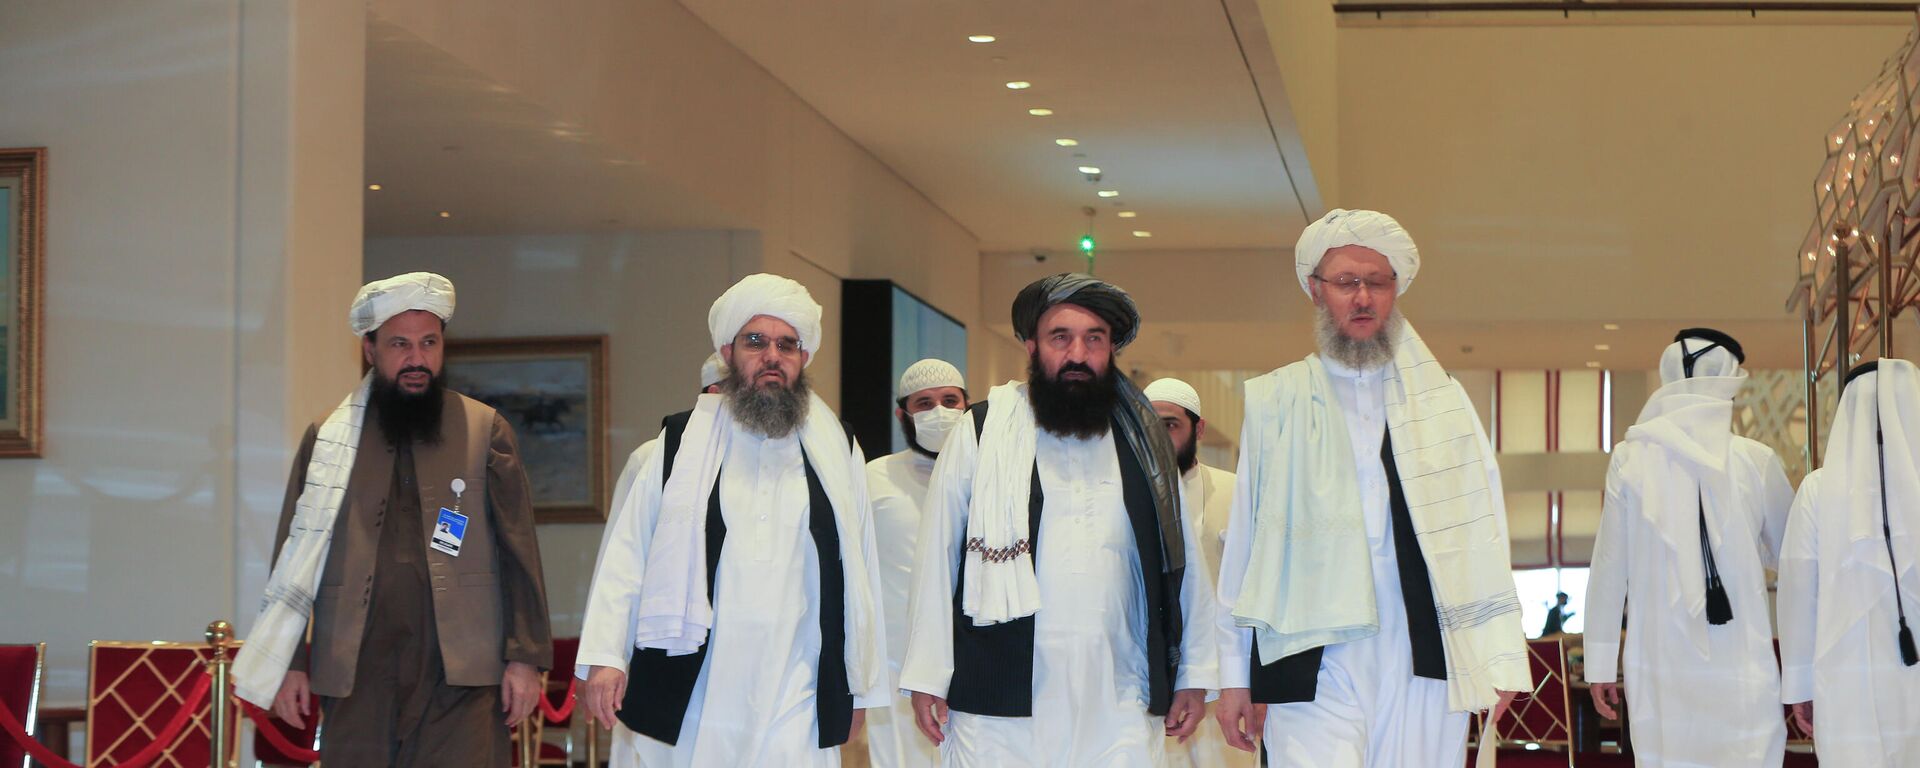 Una delegación de los talibanes - Sputnik Mundo, 1920, 07.12.2021